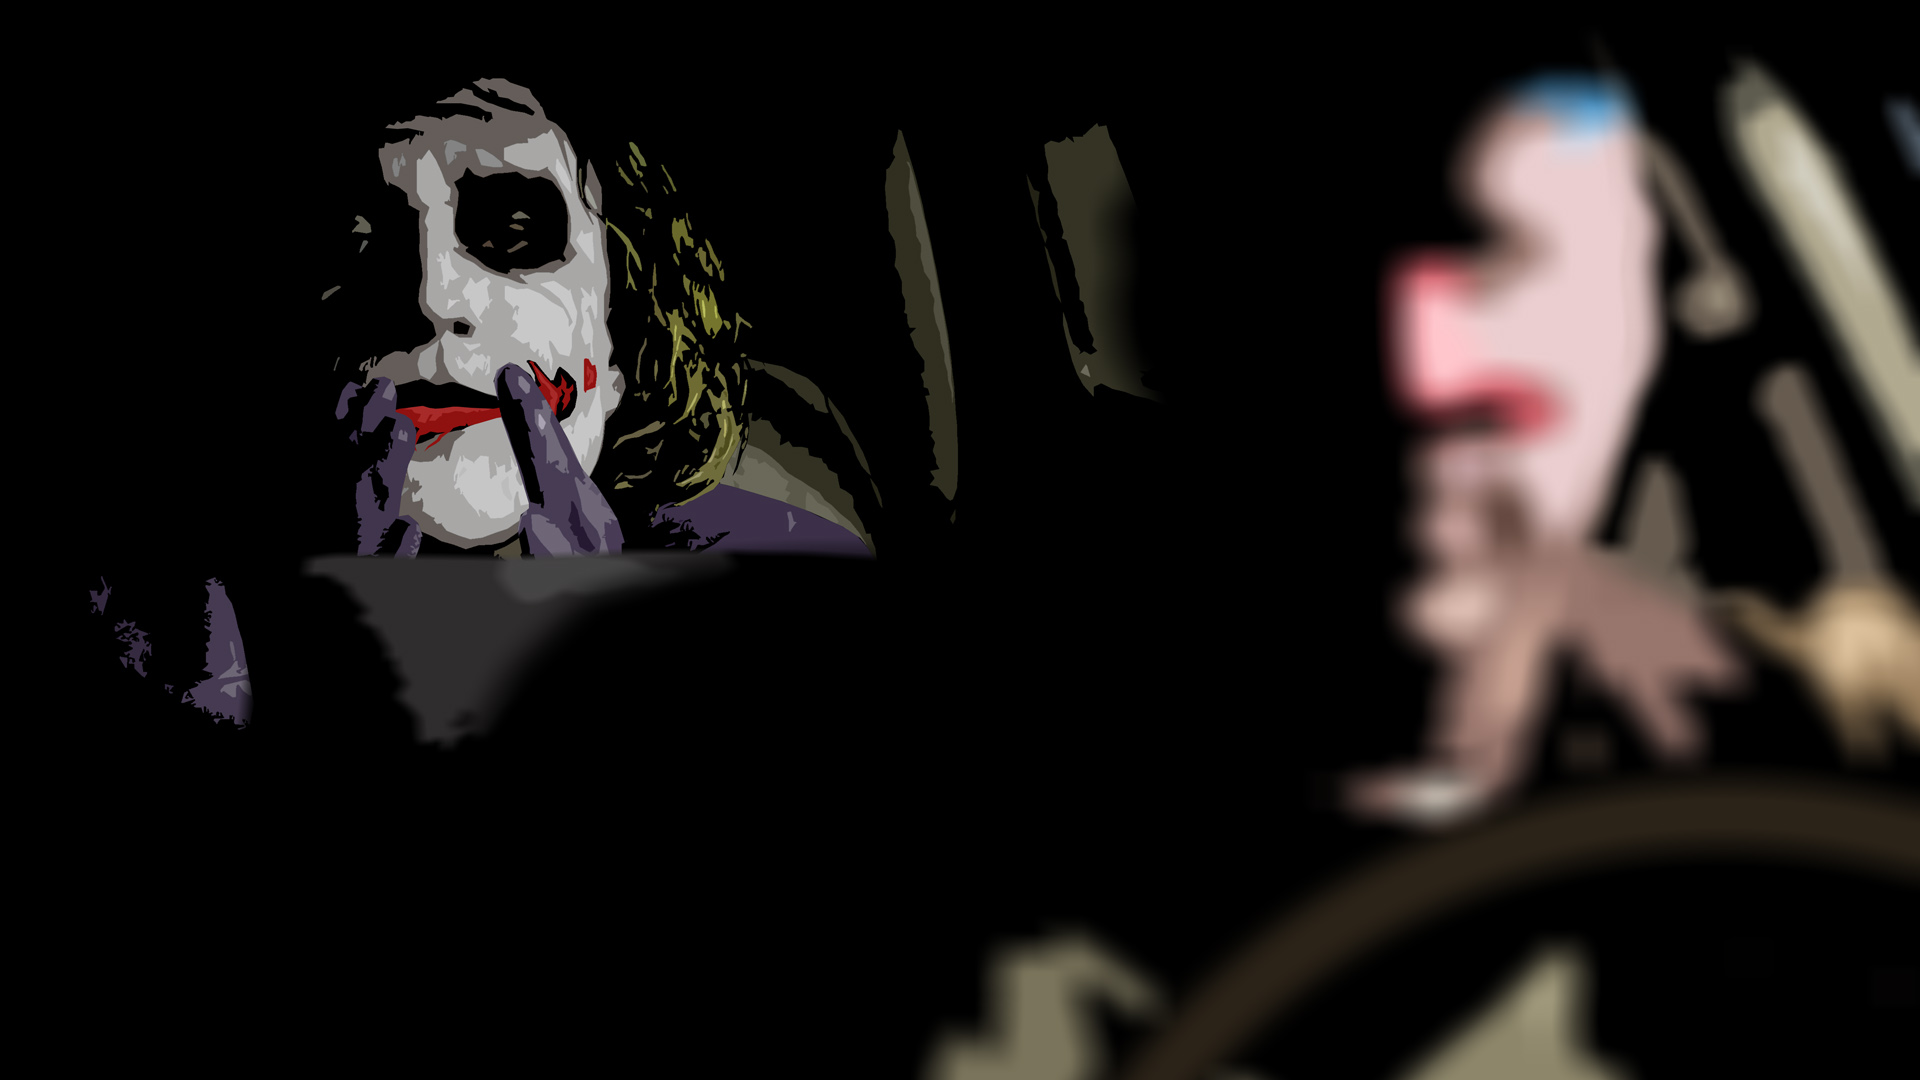 Пила джокер кинотеатр. Обои на телефон Джокер лежит на машине.